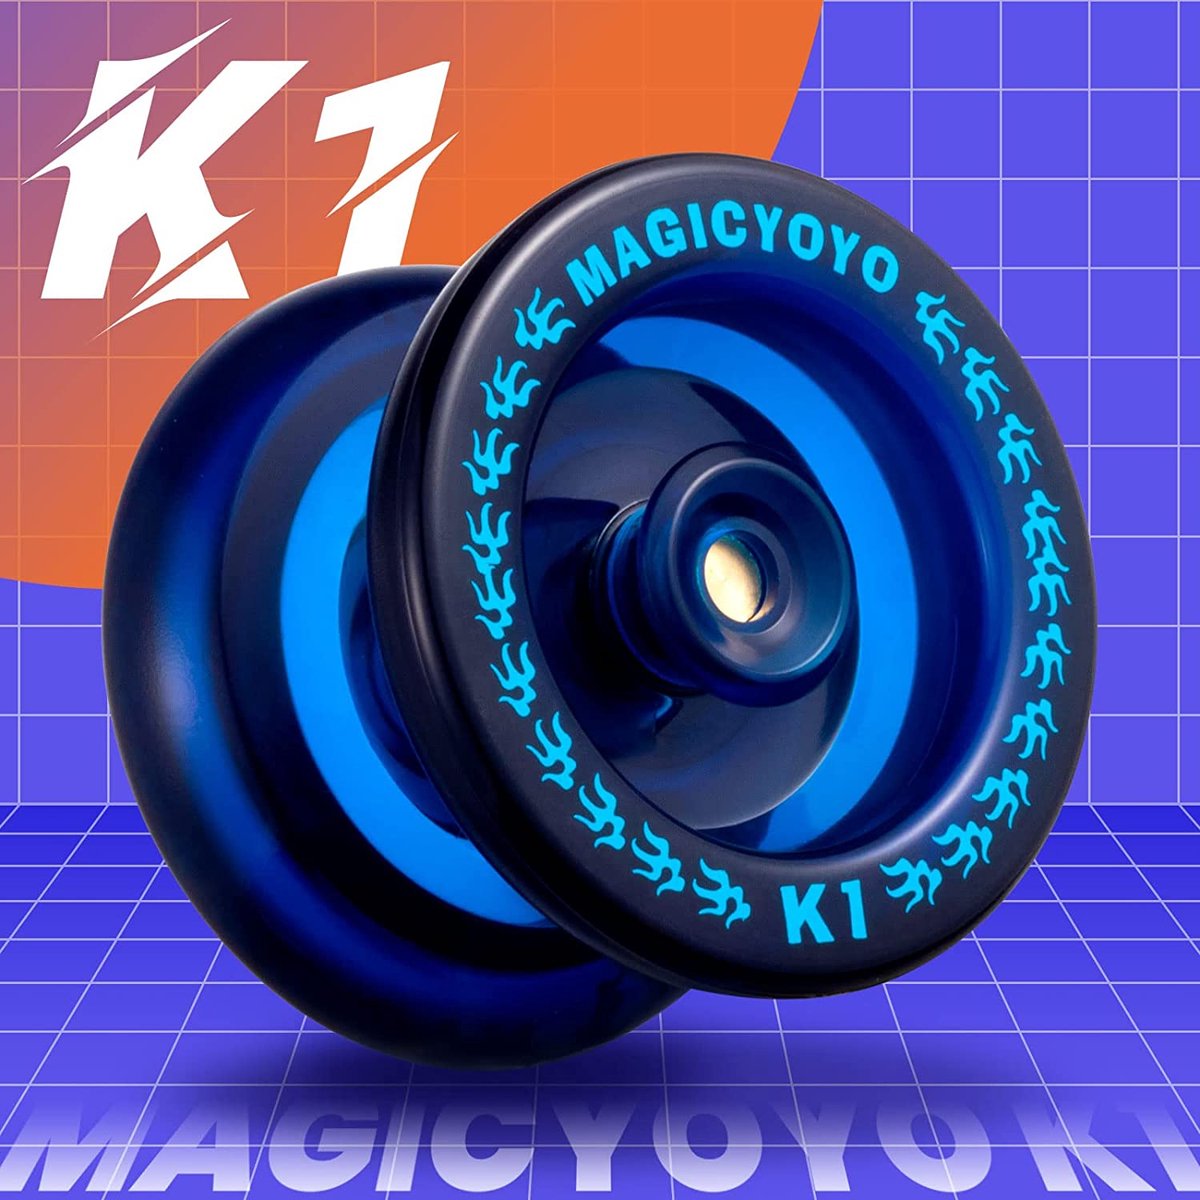 MagicYoyo K1 - Responsive - Professionele Magic Jojo K1 Spin - Voor beginners - inclusief opbergzakje, handschoen en 5 touwtjes - MagicYoyo